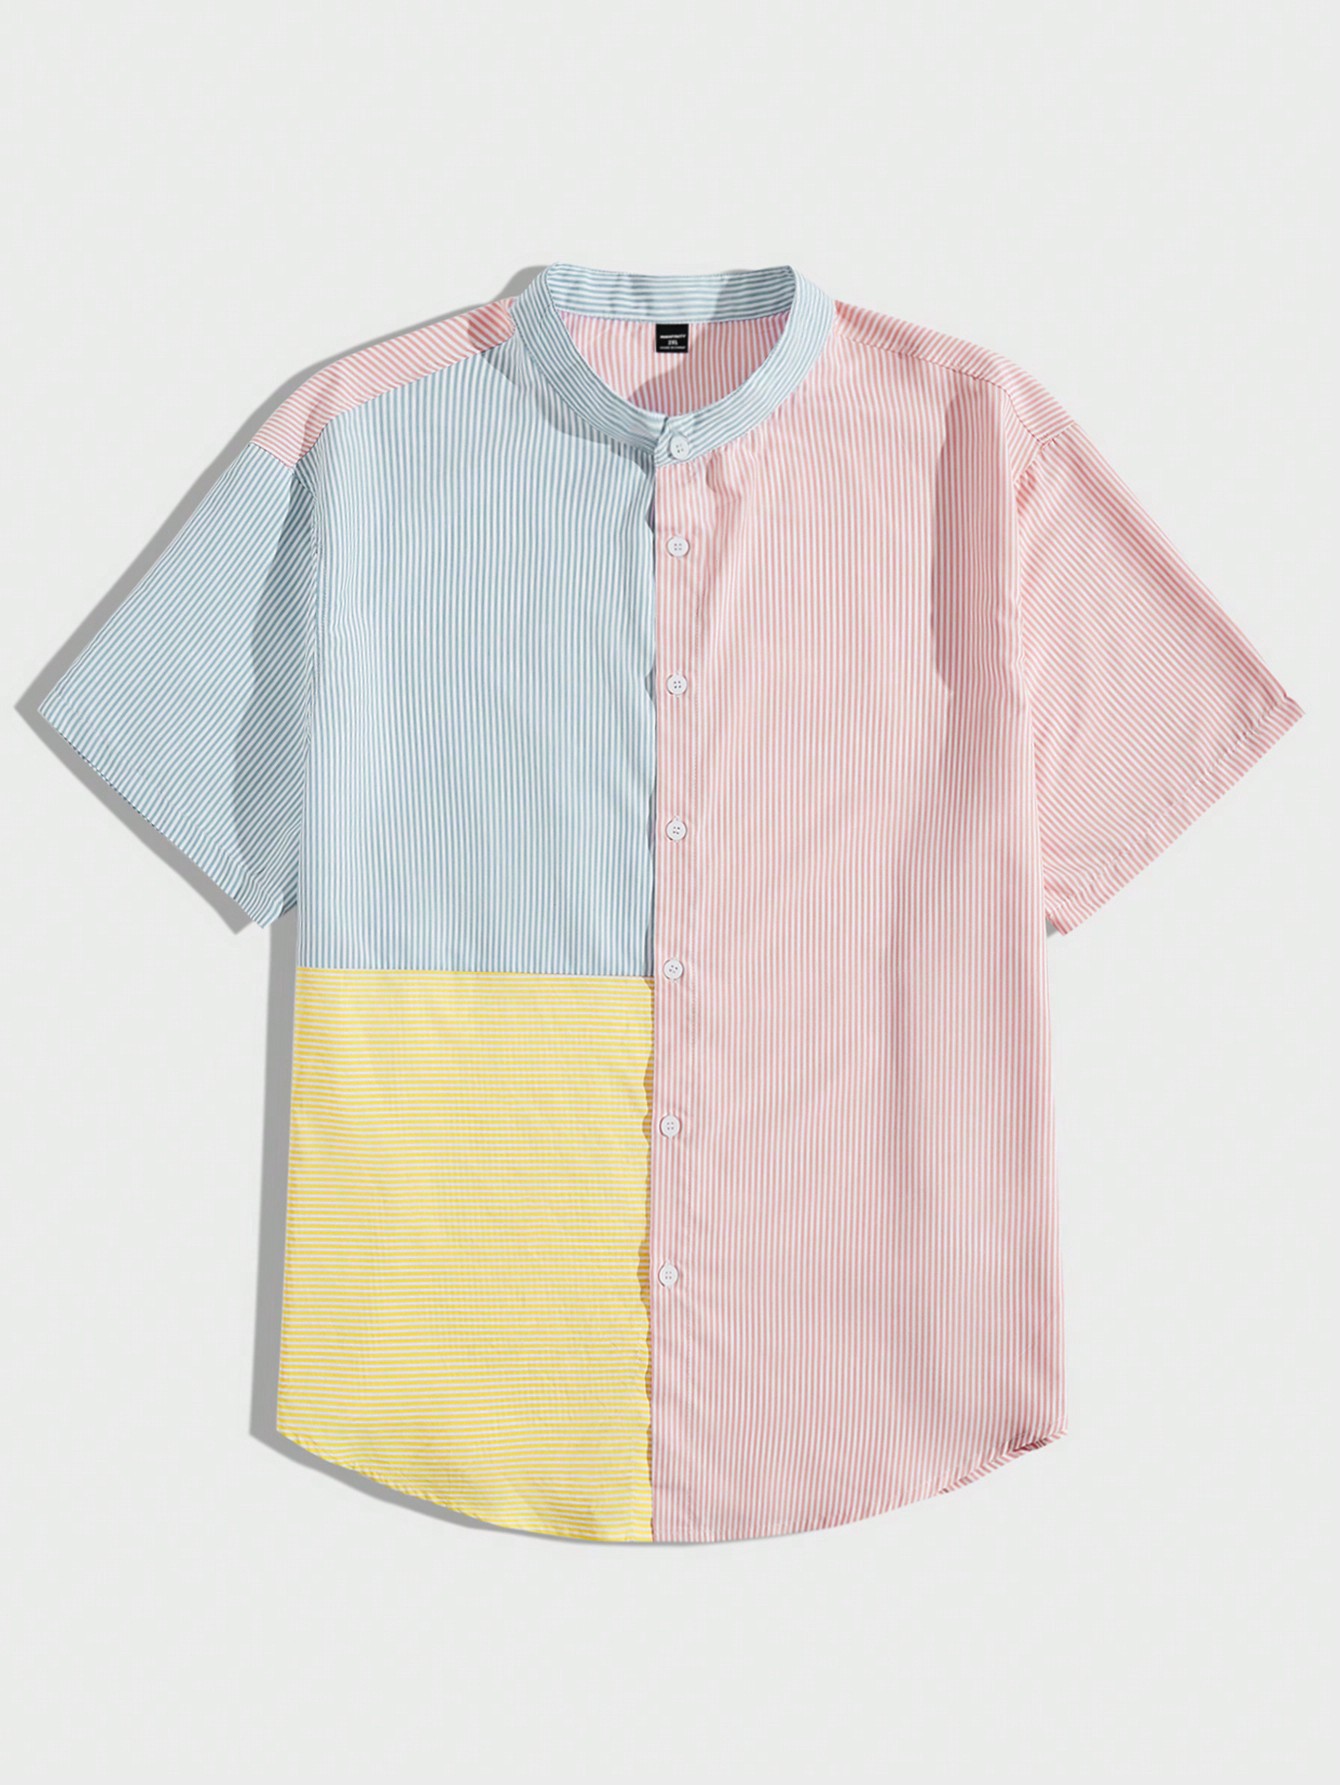 Мужская рубашка в полоску с цветными блоками Manfinity Hypemode Plus, многоцветный